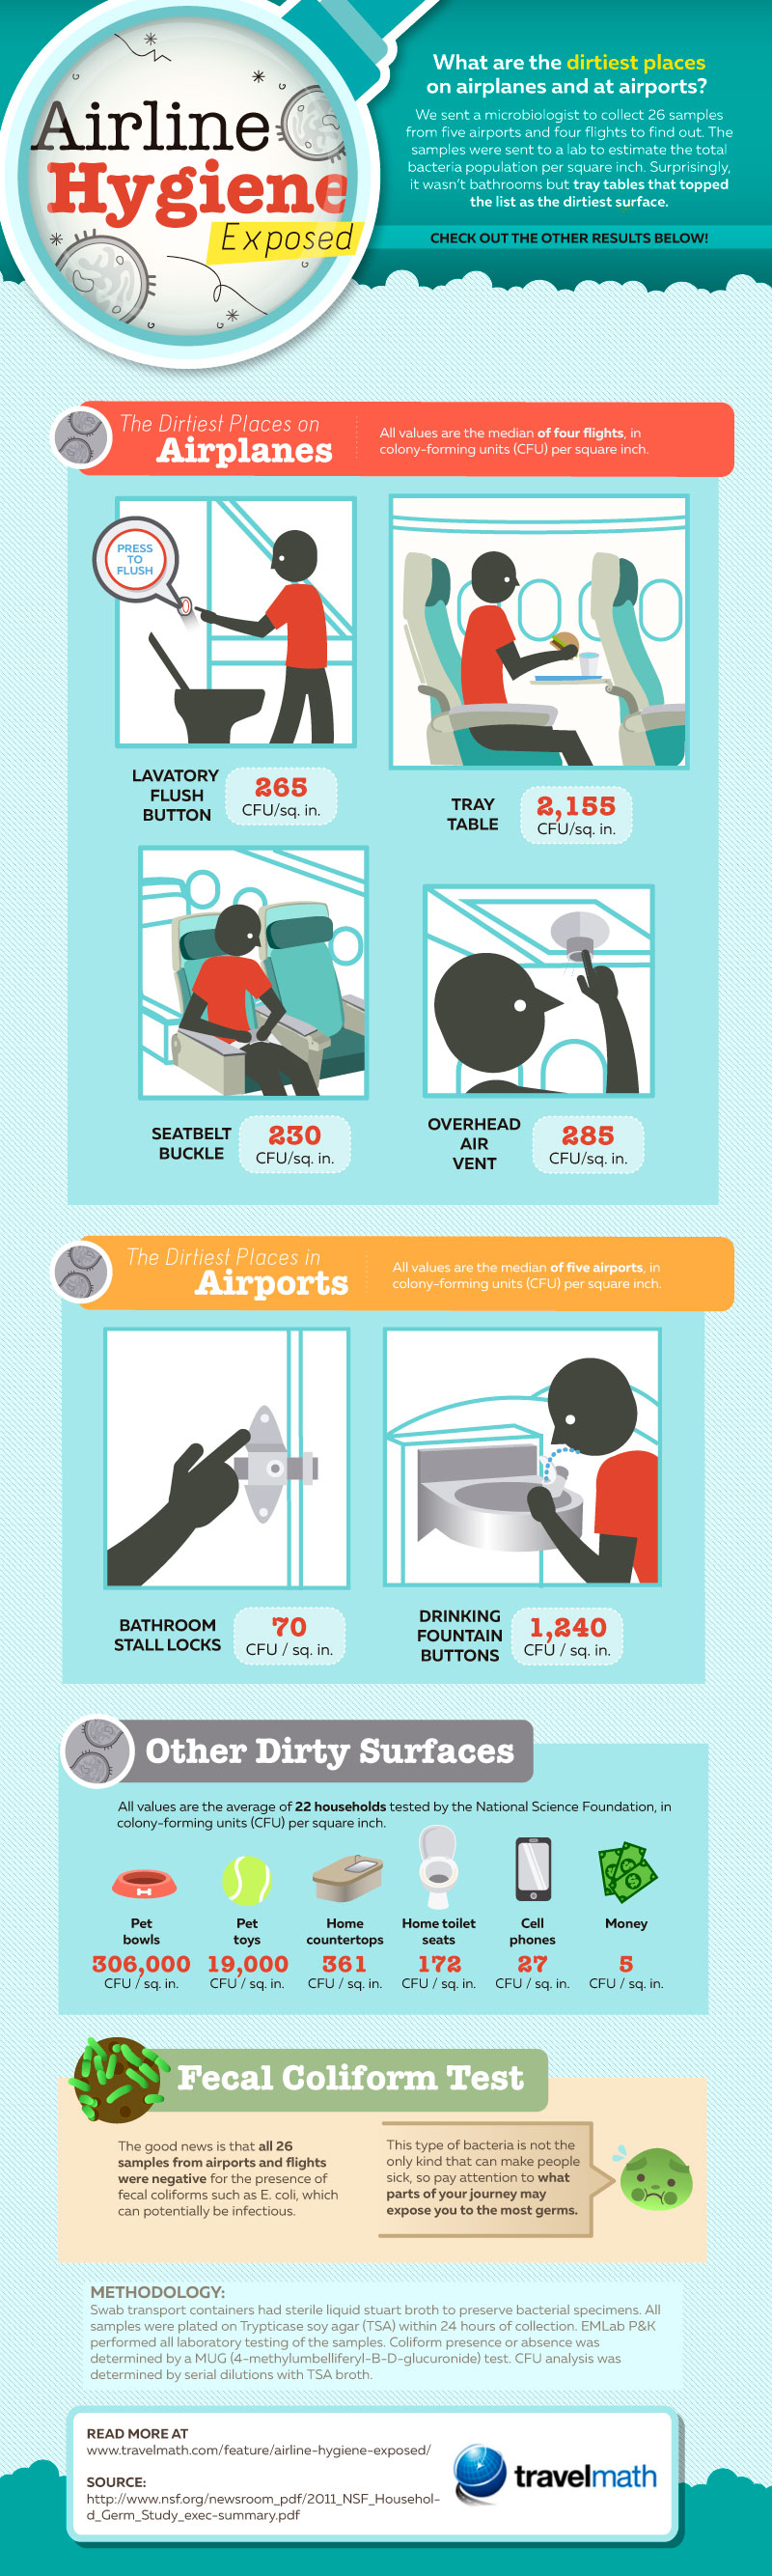 ¿Cuál es el lugar más sucio de un avión?